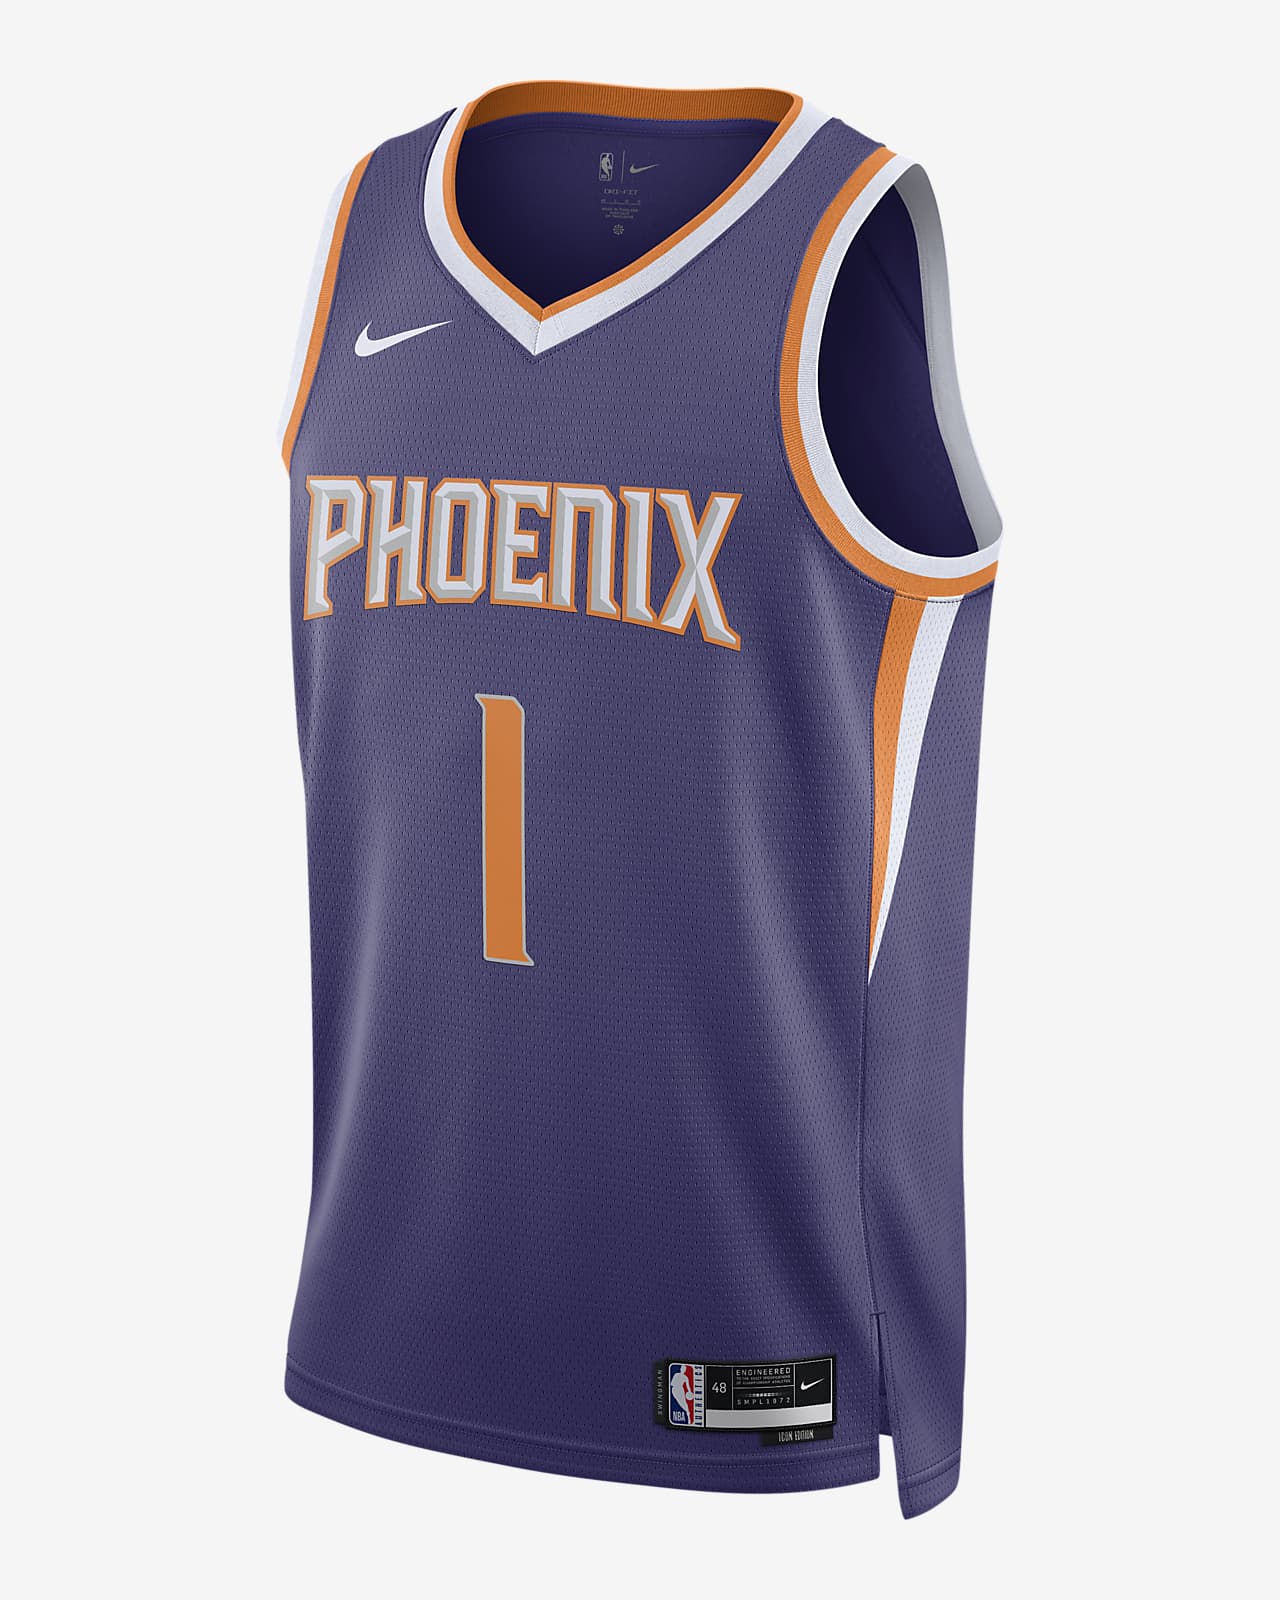 new phoenix suns jersey